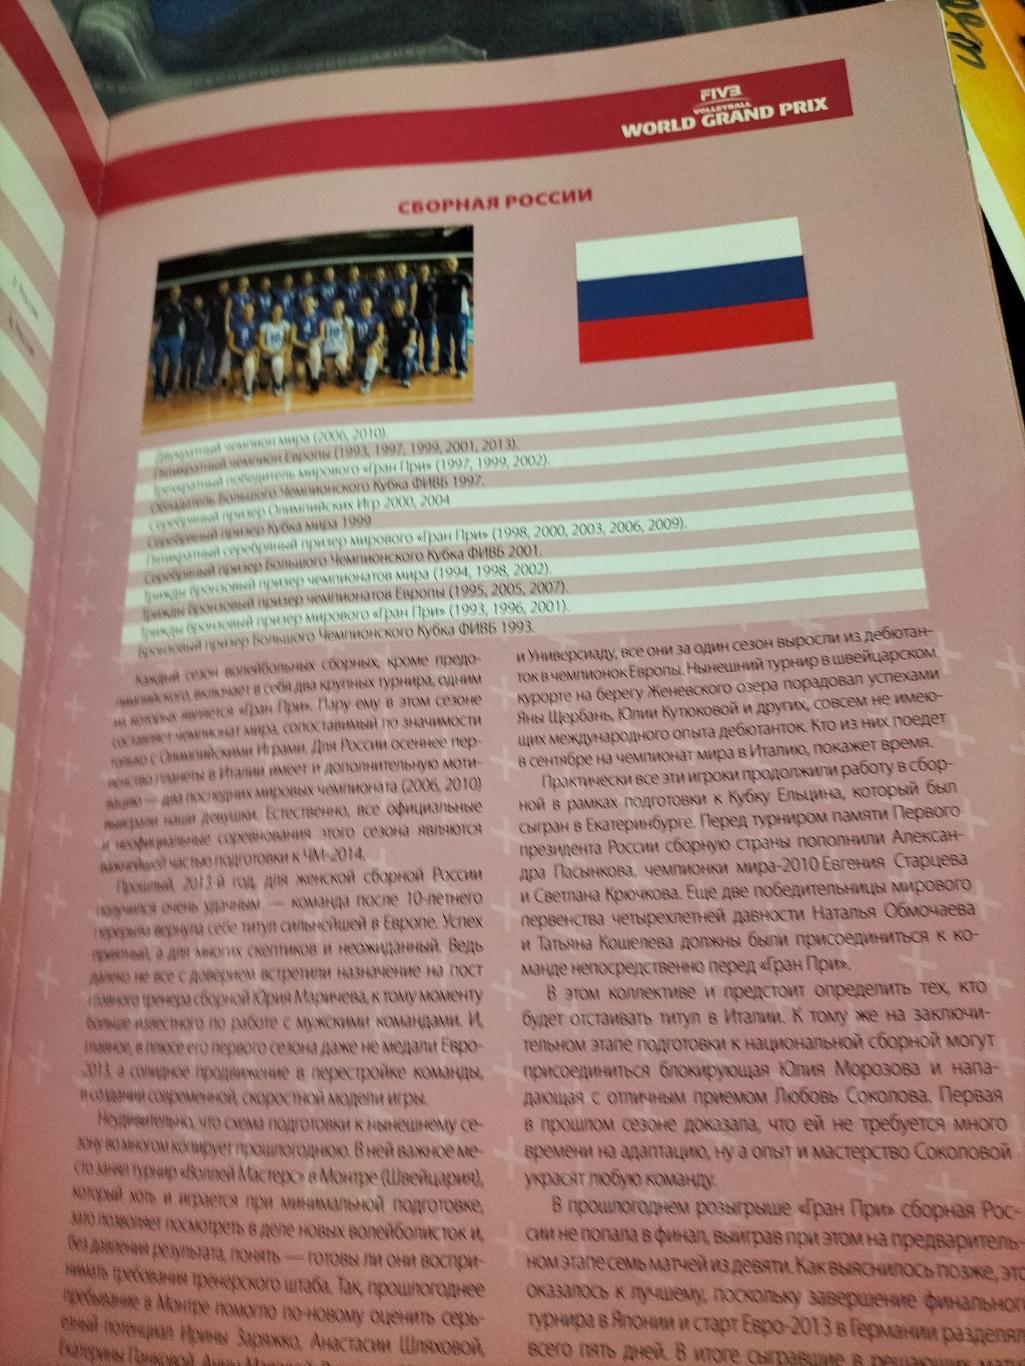 Официальная программа ФИВБ ГРАН-ПРИ 2014 по волейболу среди женских команд. 2